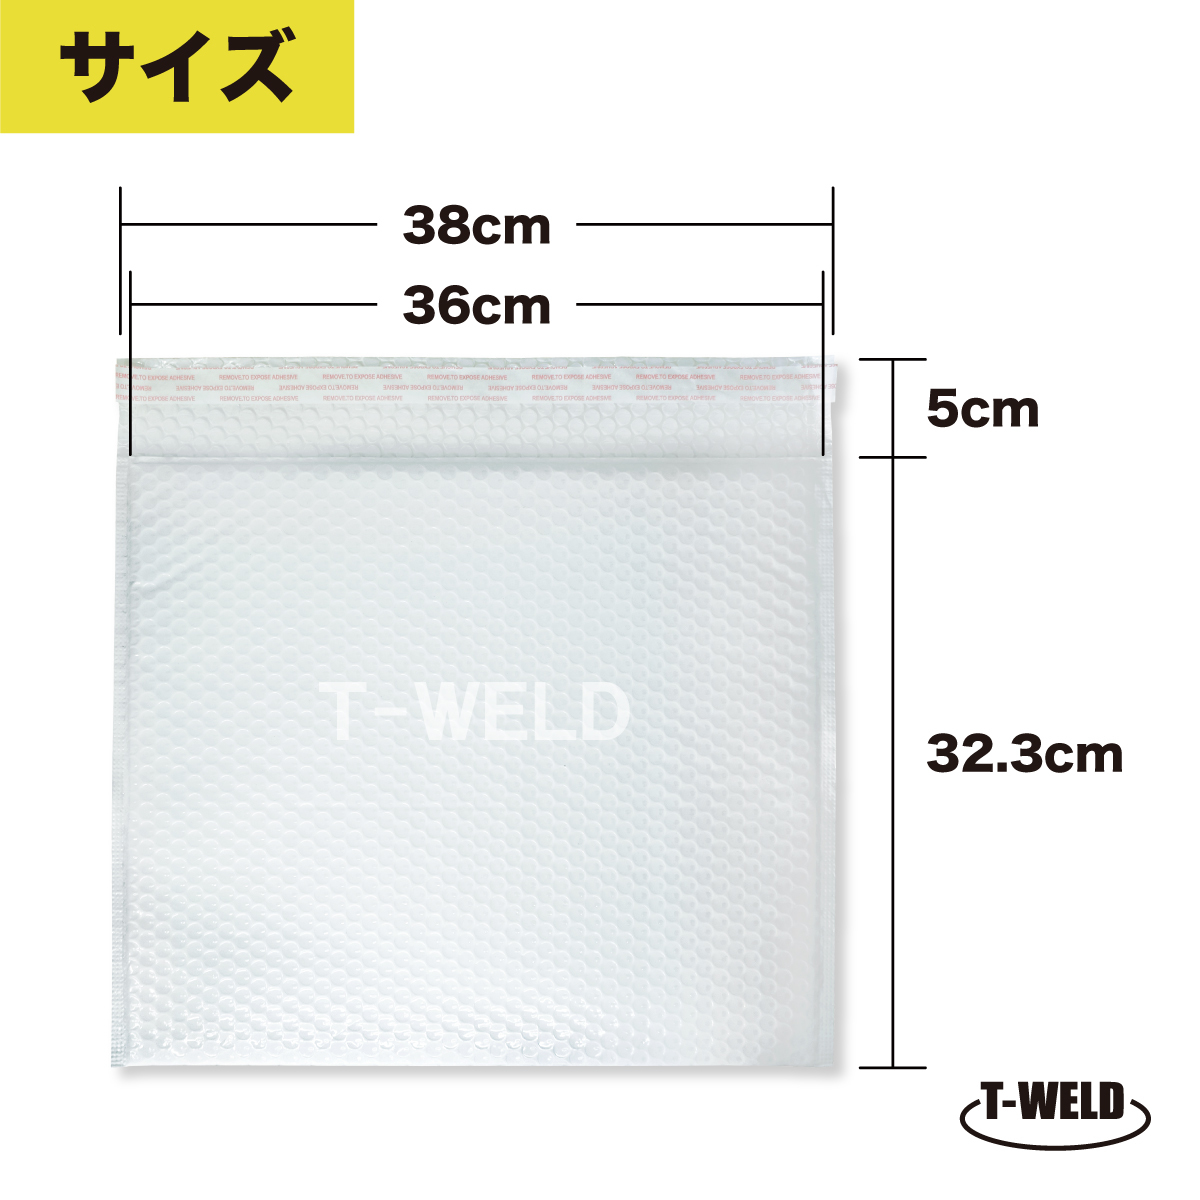 クッション封筒 エアクッション 32.3×38cm (白色 光沢) 50枚入り 防水 梱包素材 送料無料 フリマ メルカリ 緩衝材_画像2